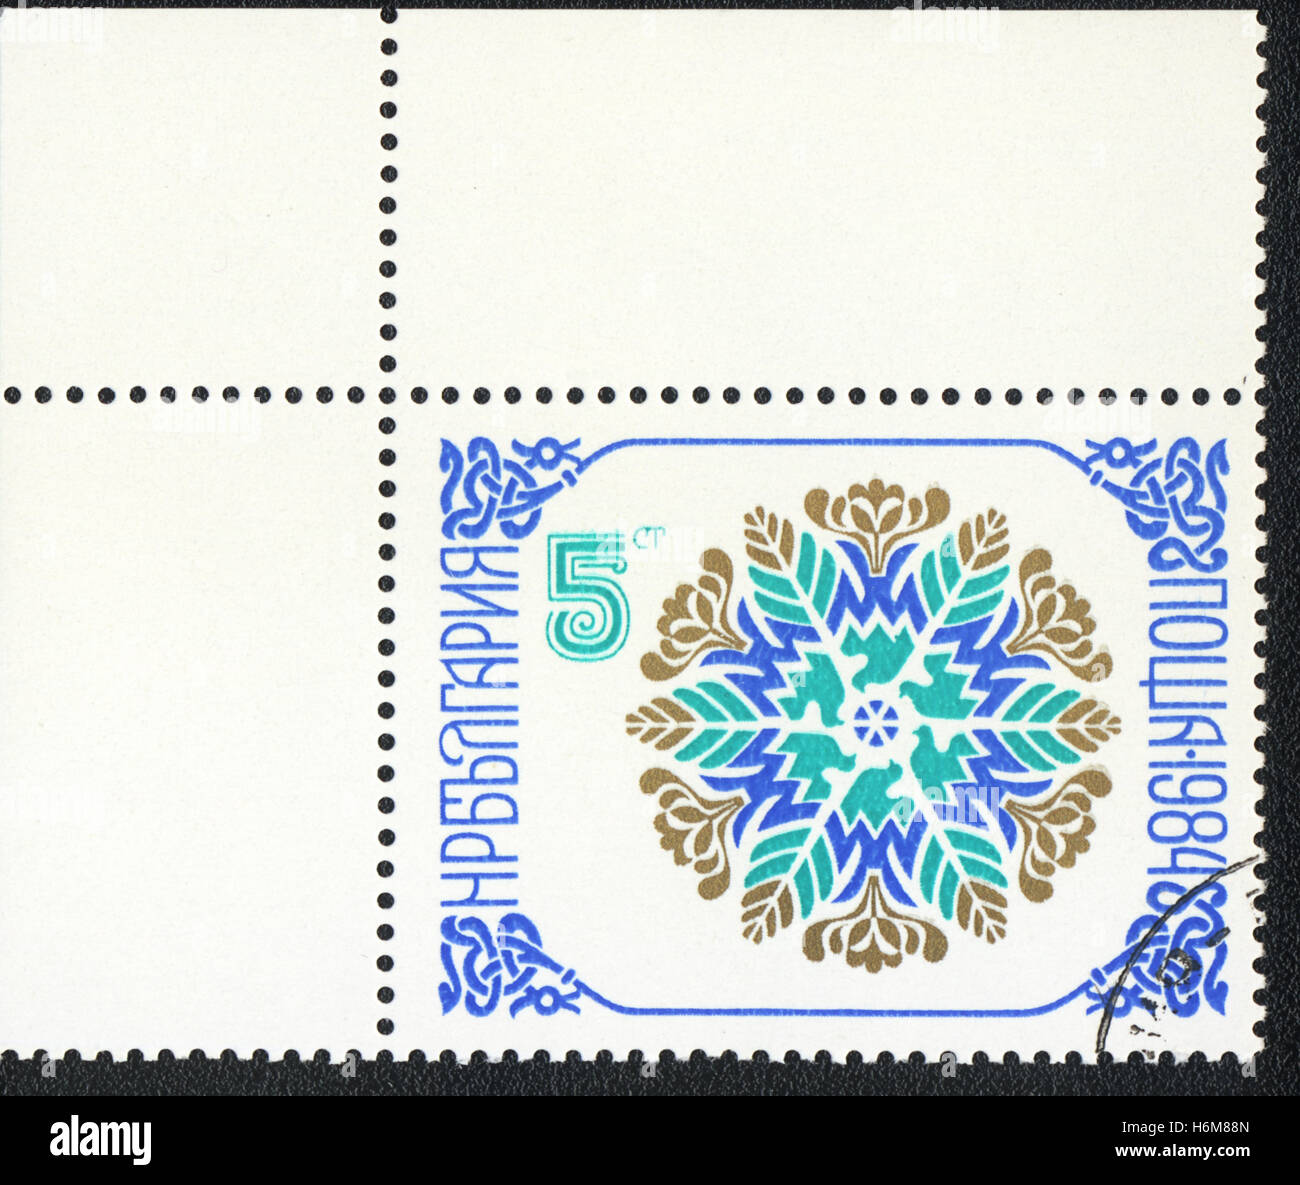 Eine Briefmarke gedruckt in Bulgarien, zeigt Blumenmuster oder Schnee in Form eines Sterns, ca. 1984 Stockfoto